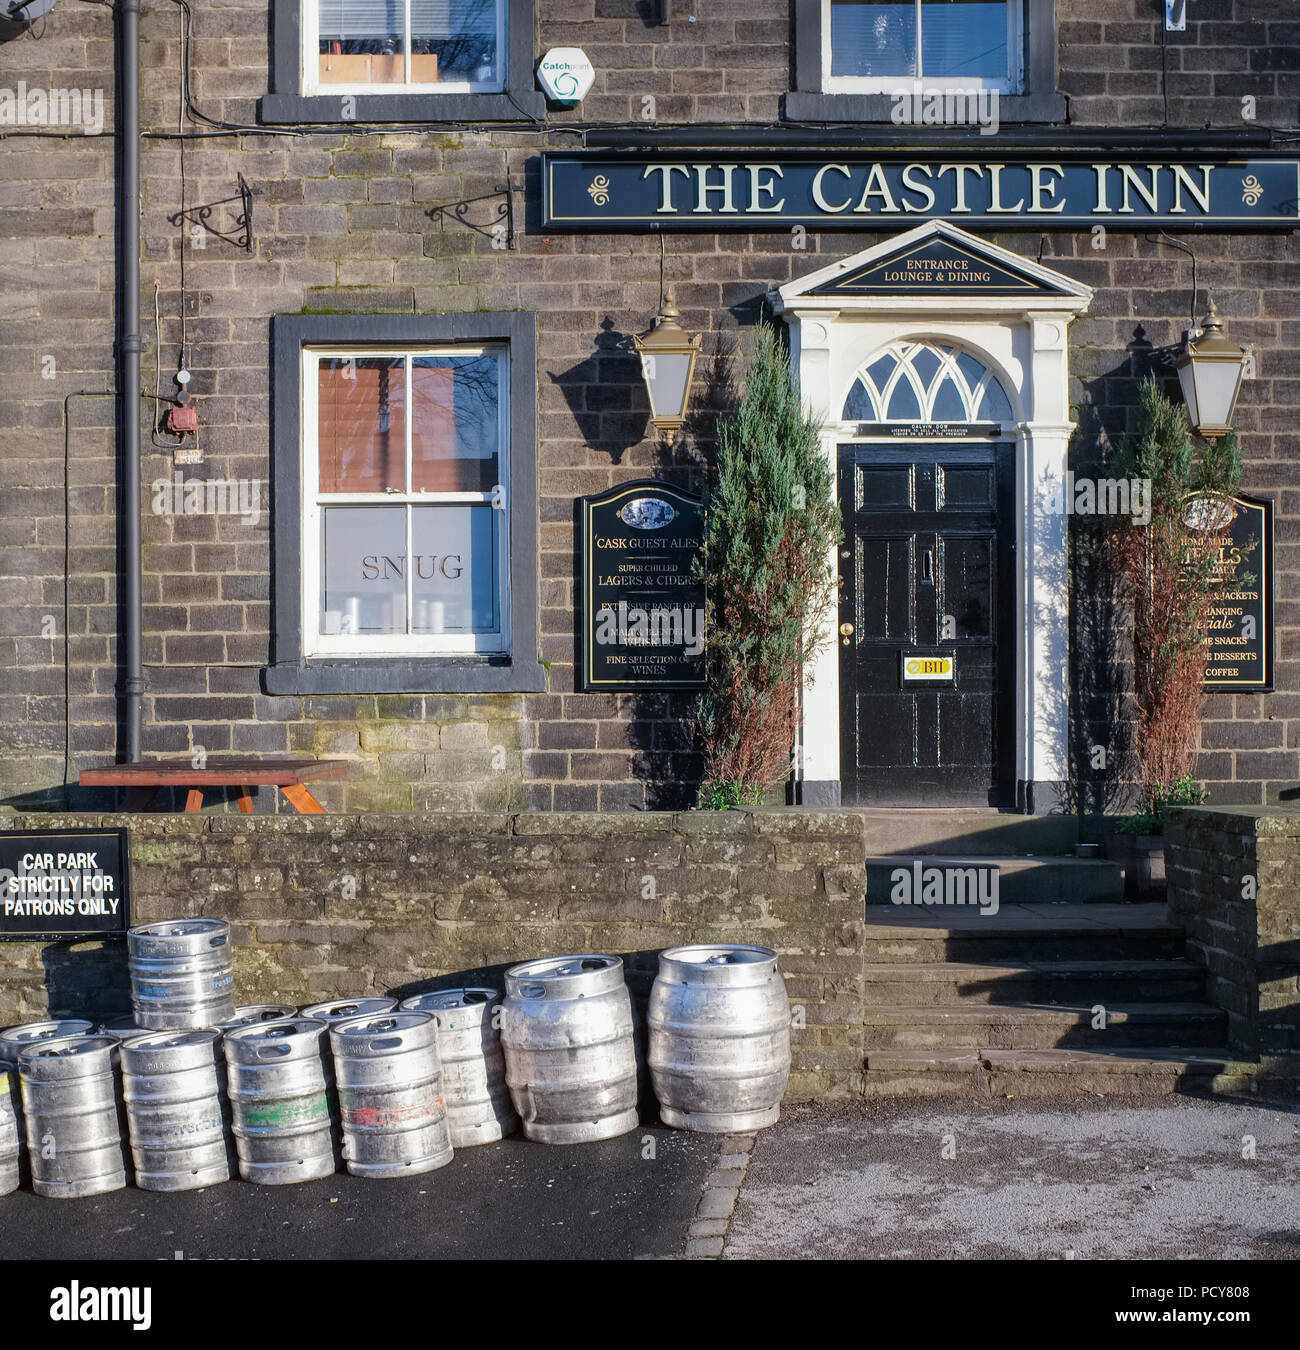 El Castle Inn Pub en Skipton, un mercado de la ciudad en el distrito de Craven de North Yorkshire, el 27 de diciembre de 2015, de Skipton, Inglaterra. Foto de stock